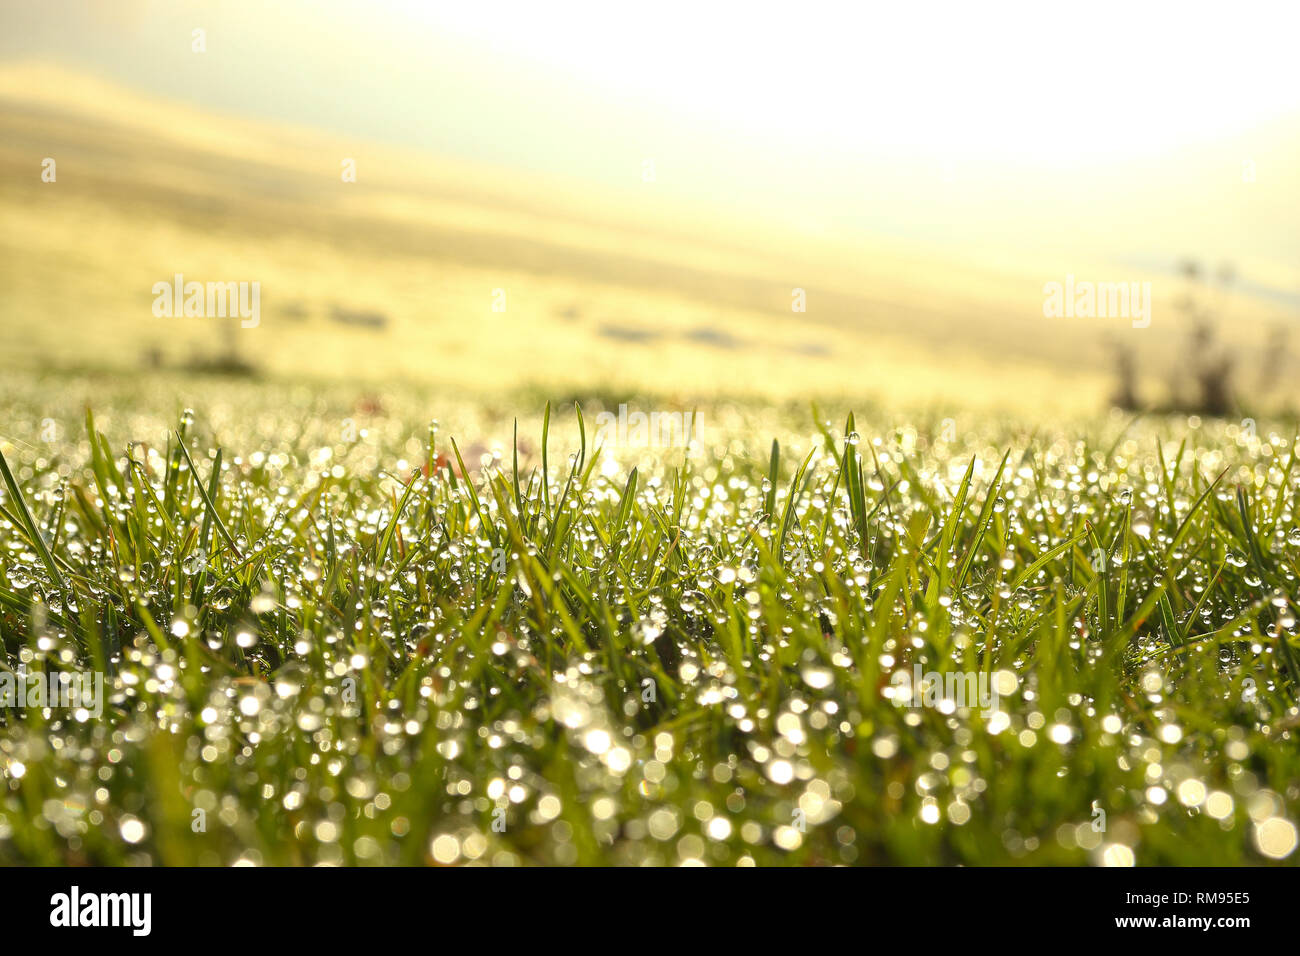 Gocce di rugiada dell'acqua sull'erba in condizioni di luce diurna con piacevole effetto di sfocatura in al di fuori della zona di messa a fuoco Foto Stock